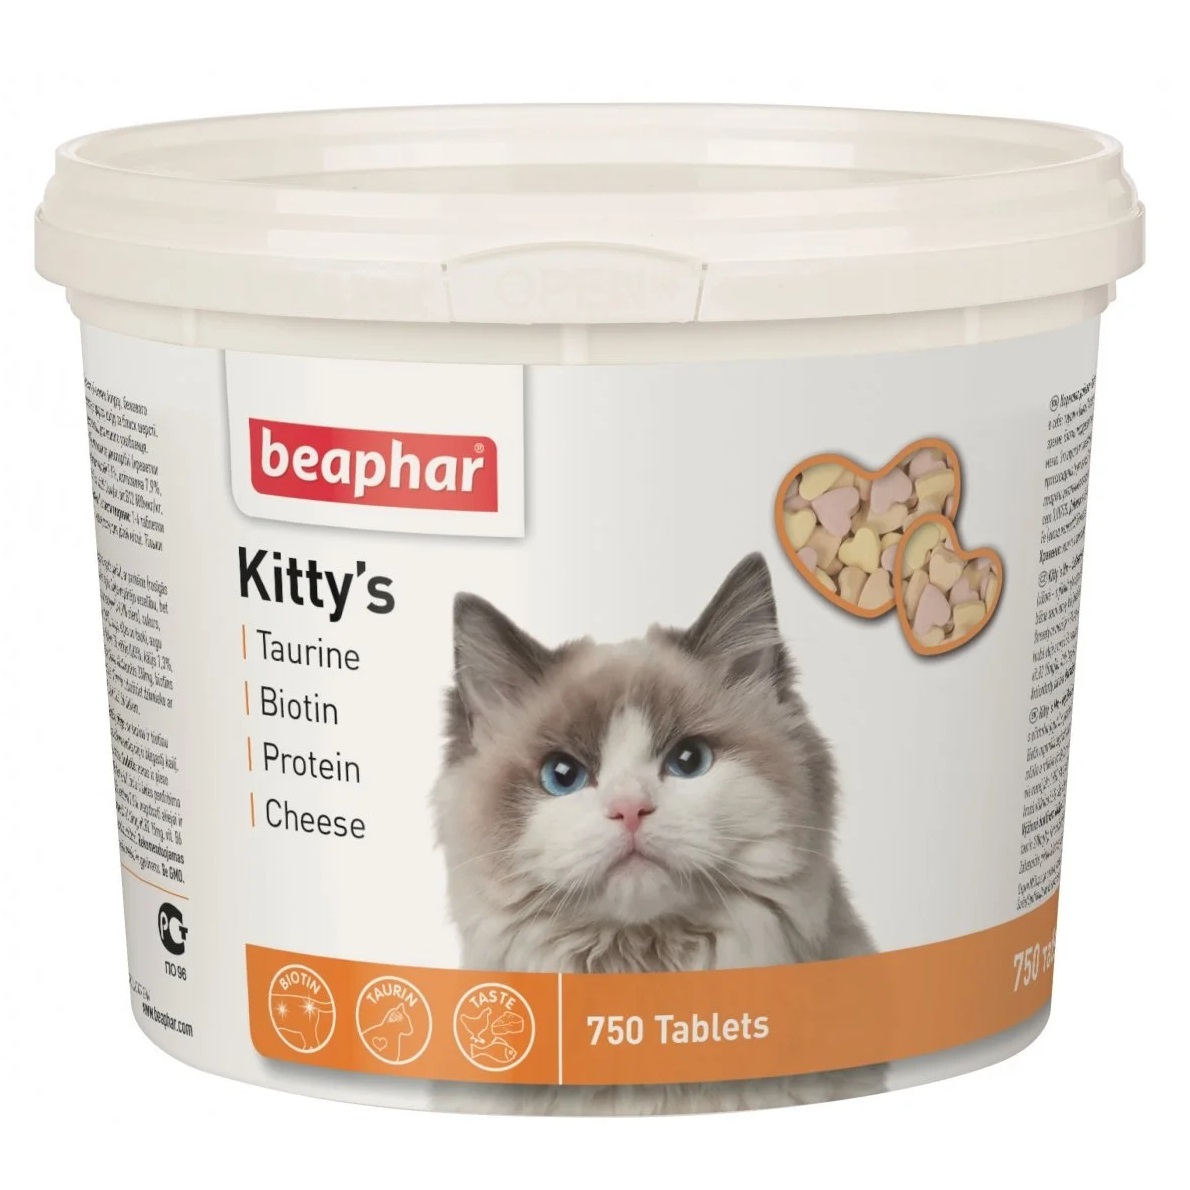 Витаминизированное лакомство Beaphar Kitty's Mix для котов с таурином и биотином, сыром и протеином, 750 т - фото 1